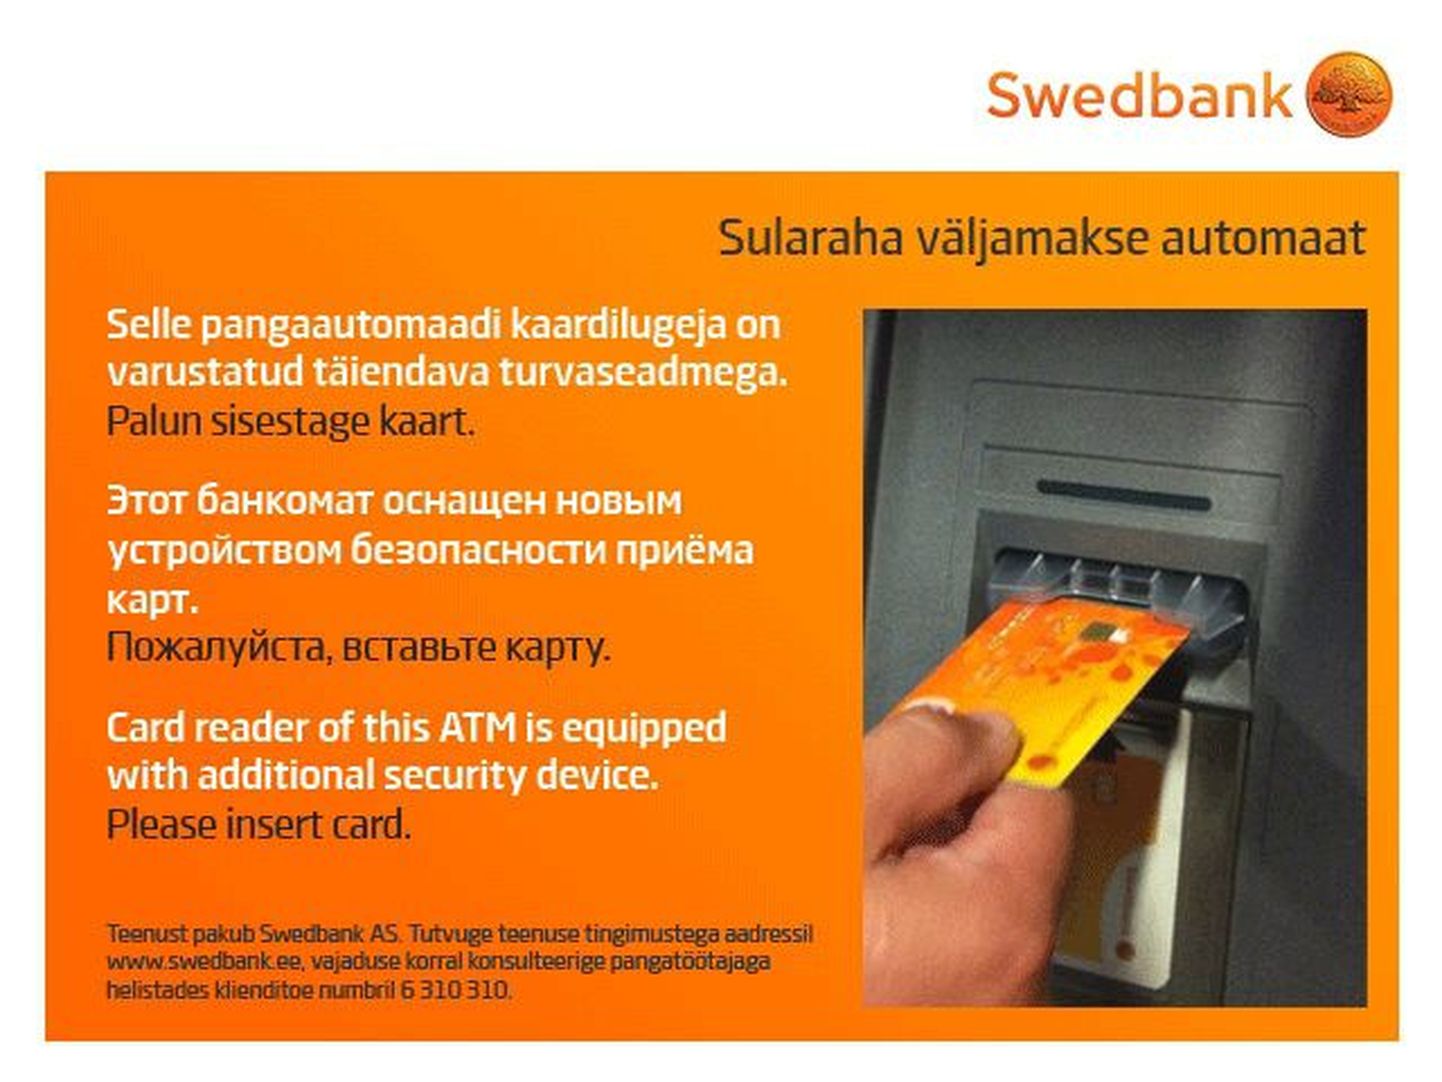 Swedbank alustas Viljandimaal pangakaardi kopeerimisvastase seadmete aigaldamist oma sularahaautomaatidele.